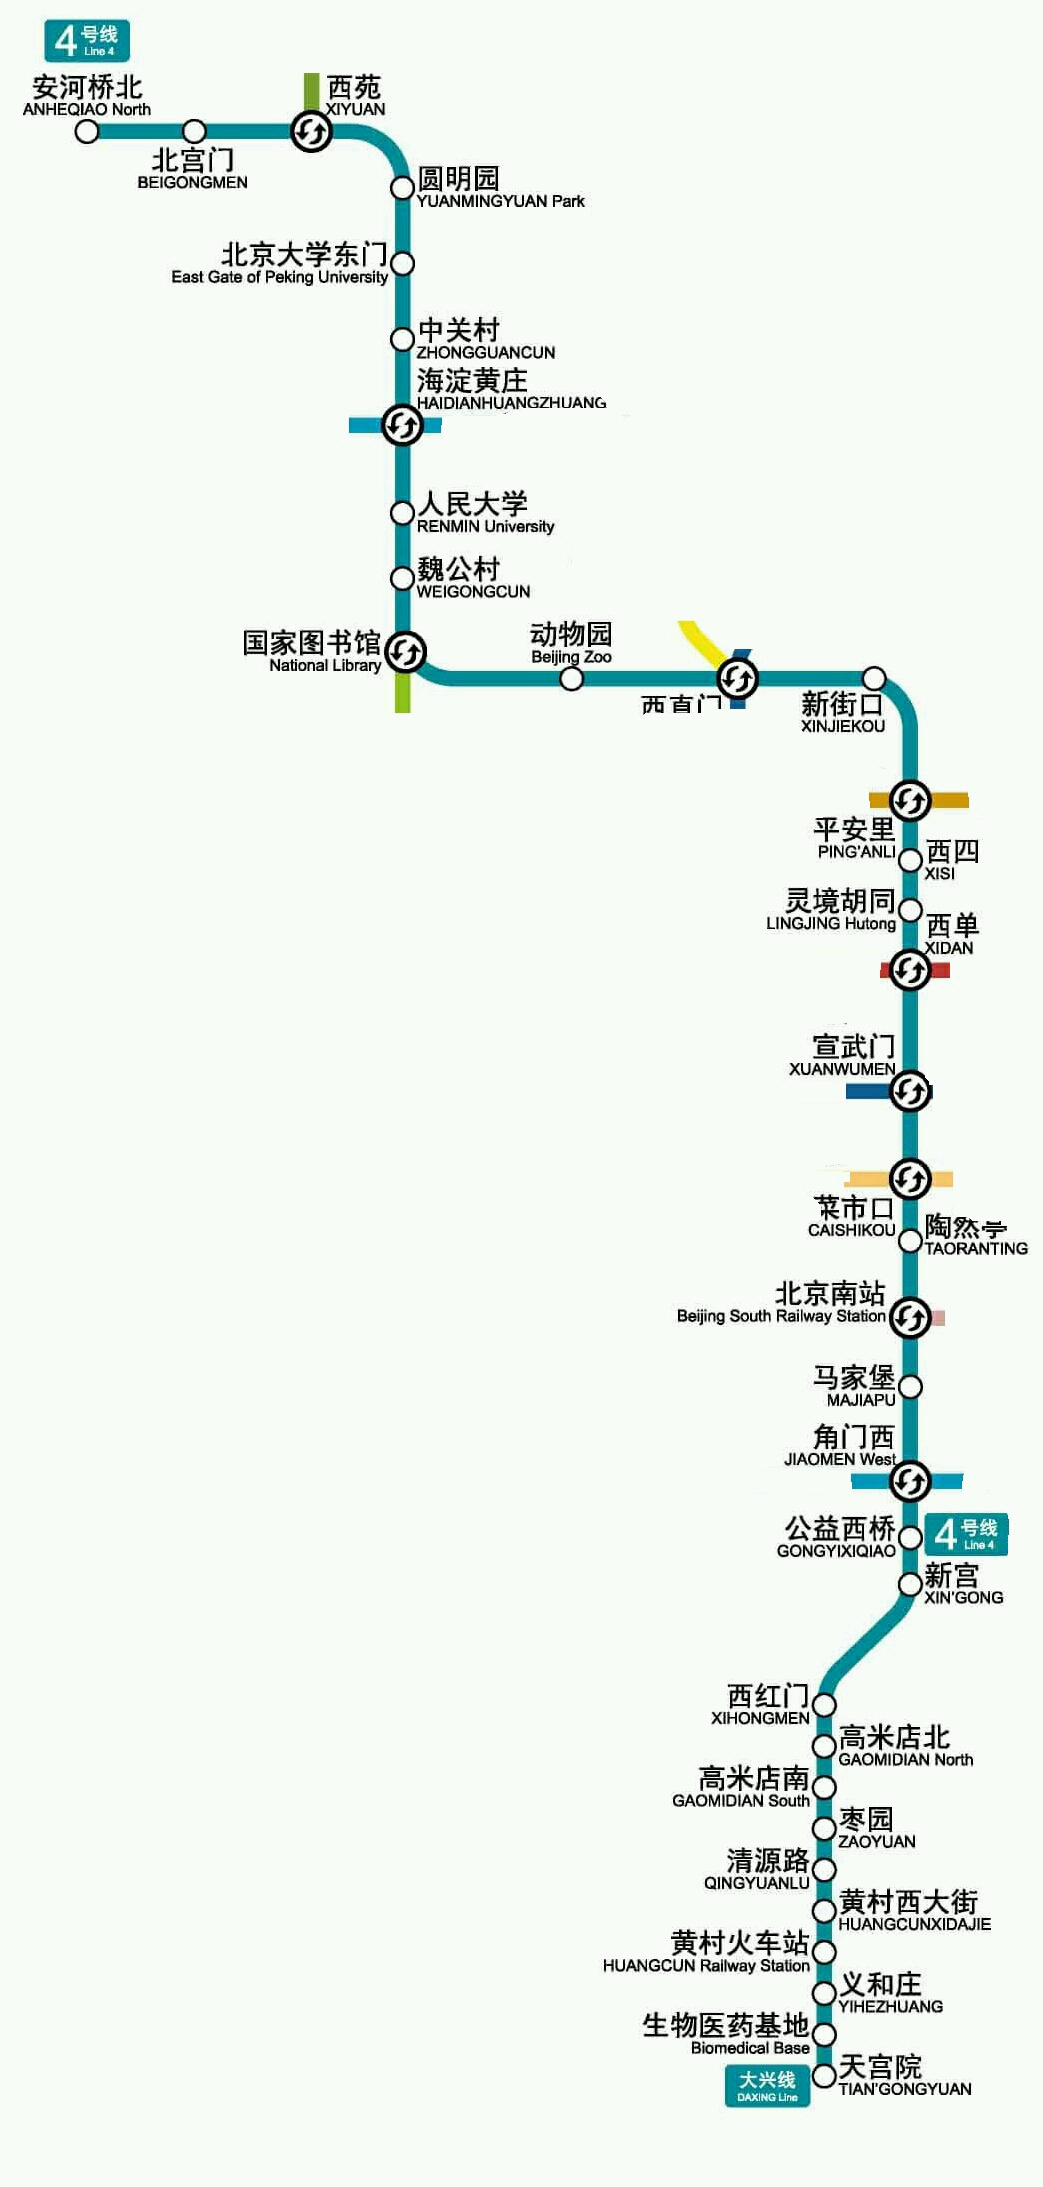 地铁(五)北京四号线     2009年9月28日,4号线全线开通,大兴线区段